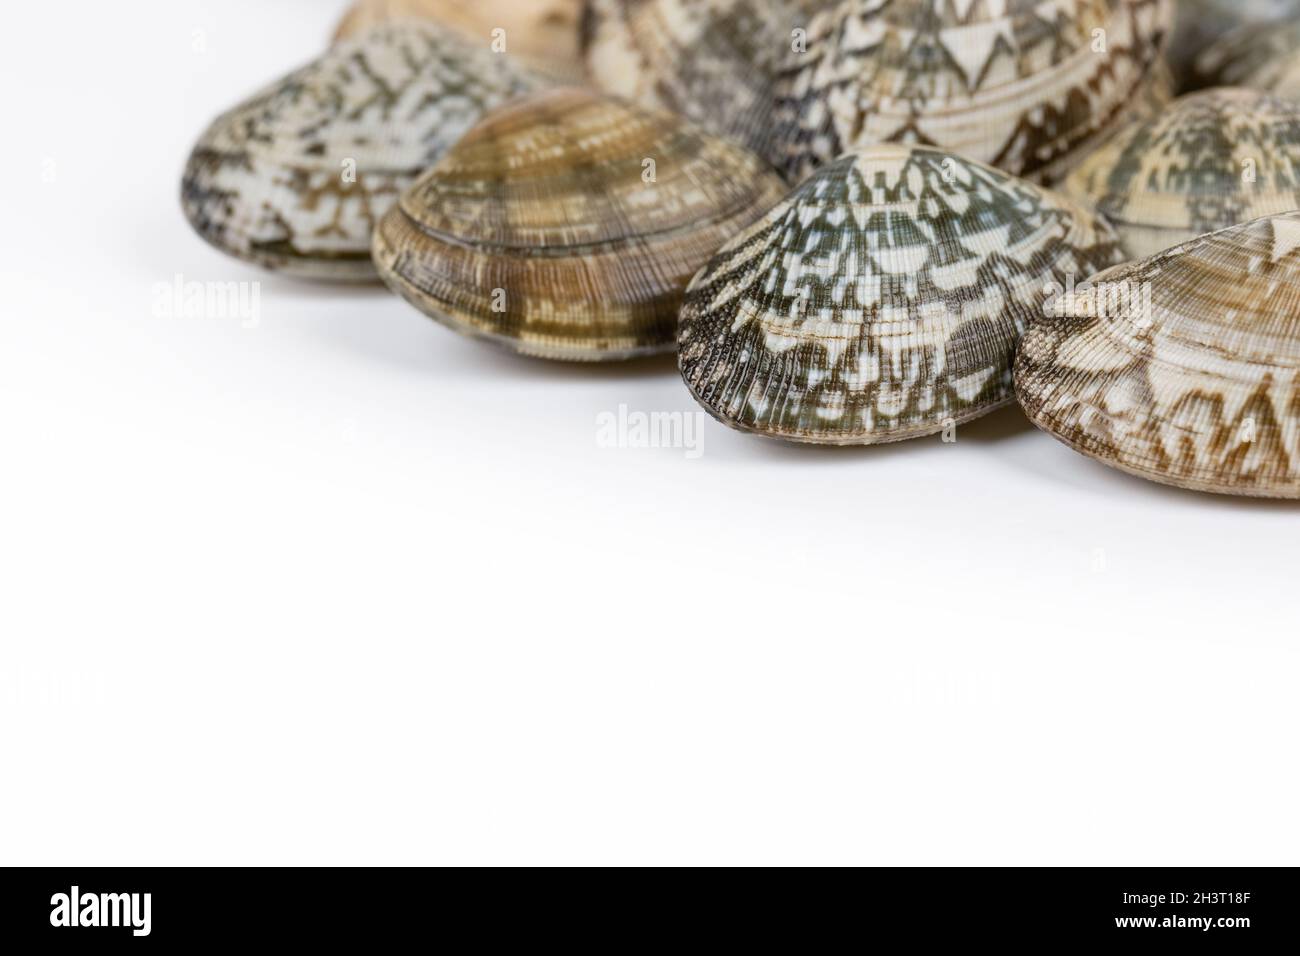 Short necked clam on white background Stock Photo